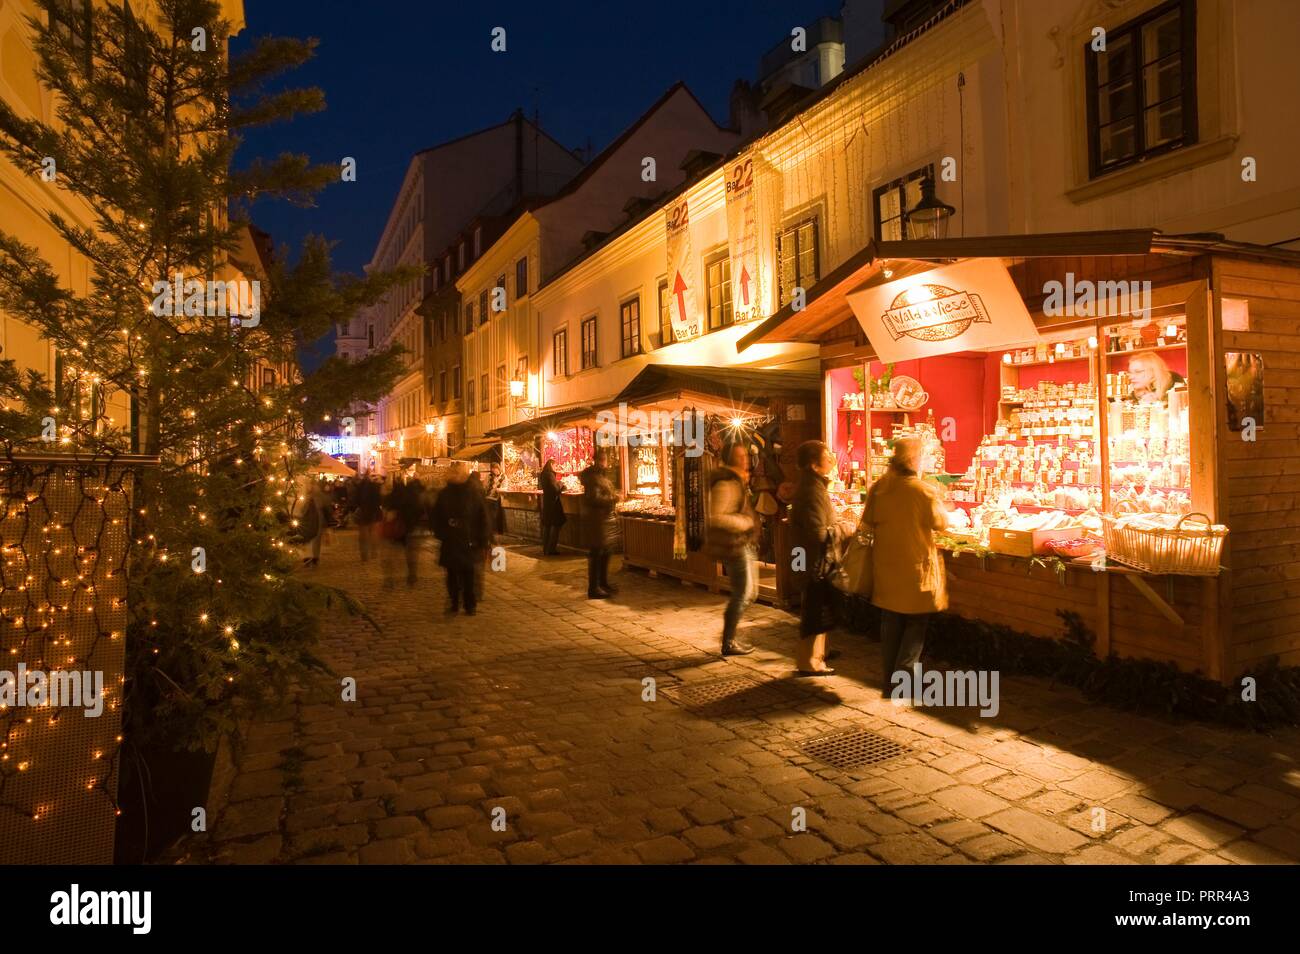 Wien, Weihnachtsmarkt Spittelberg - Vienna, Christmas Market at Spittelberg Stock Photo